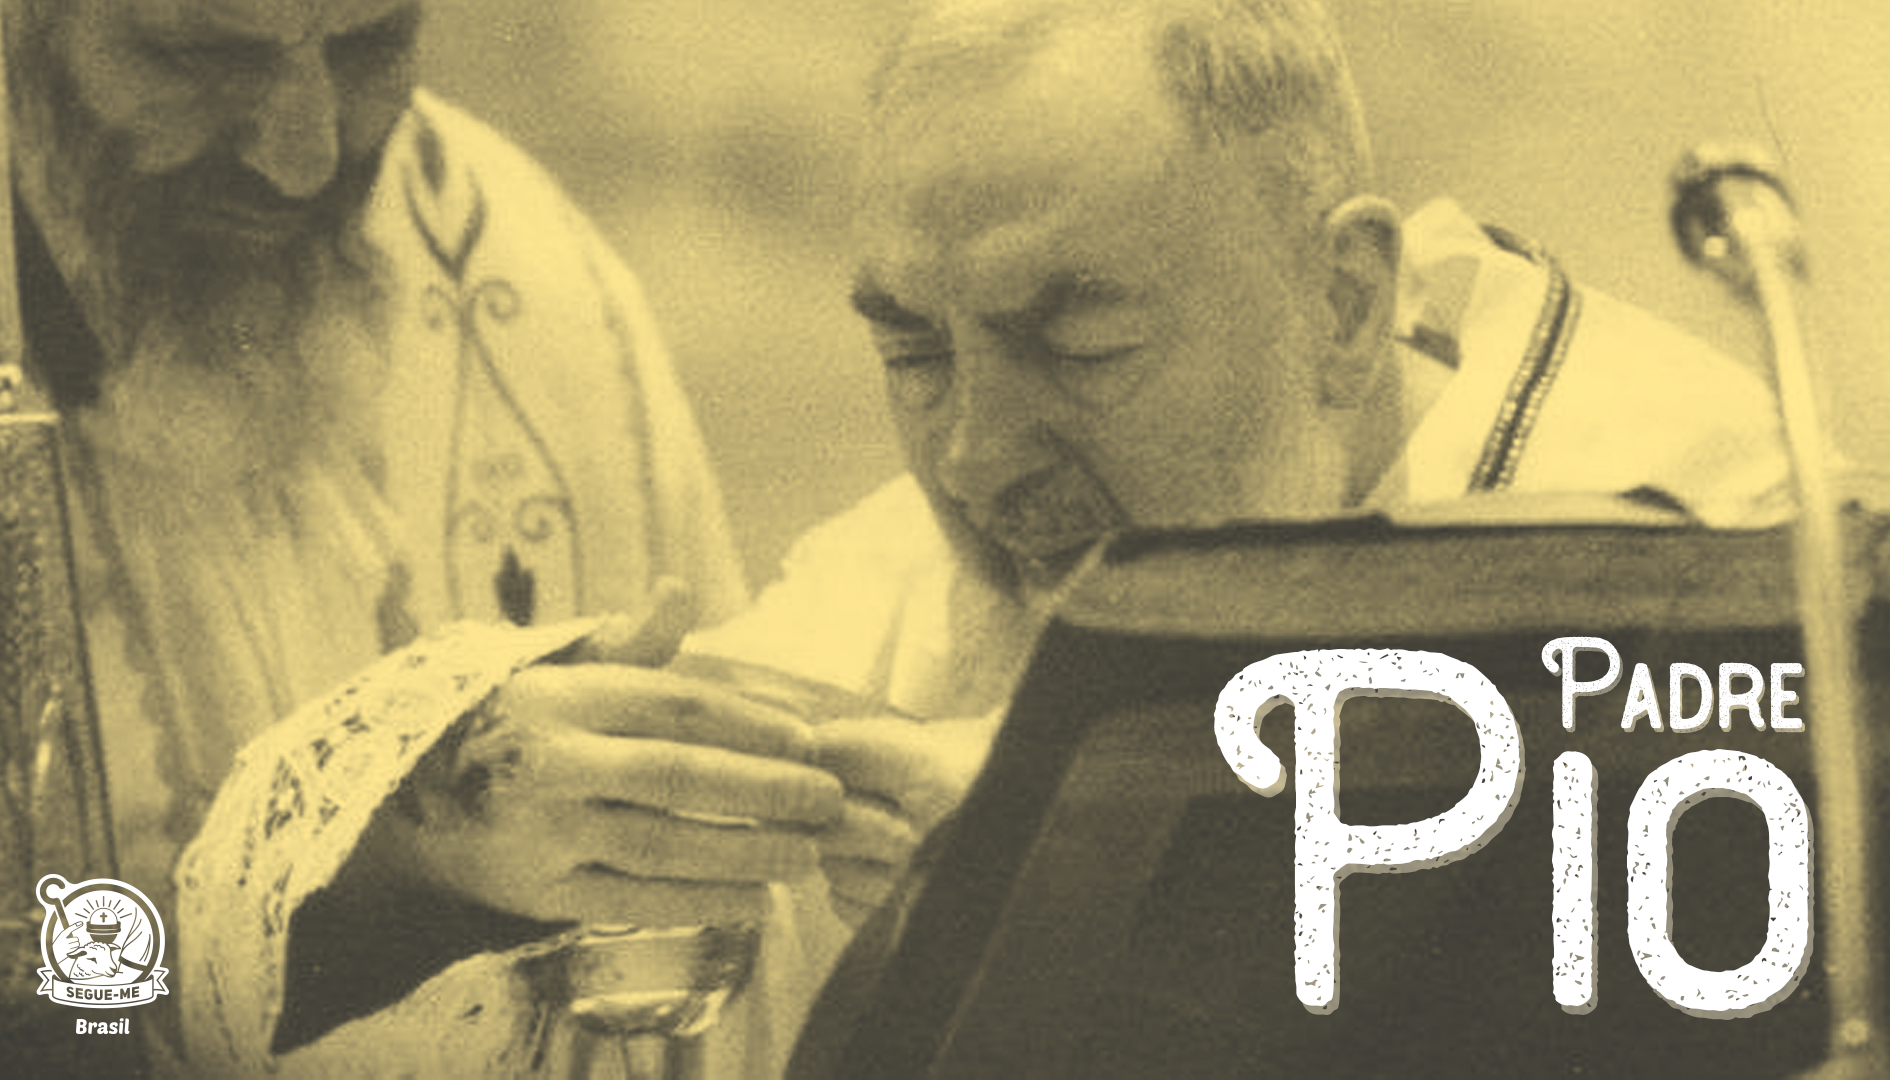 Oração de São Padre Pio de Pietrelcina, PDF, Amor